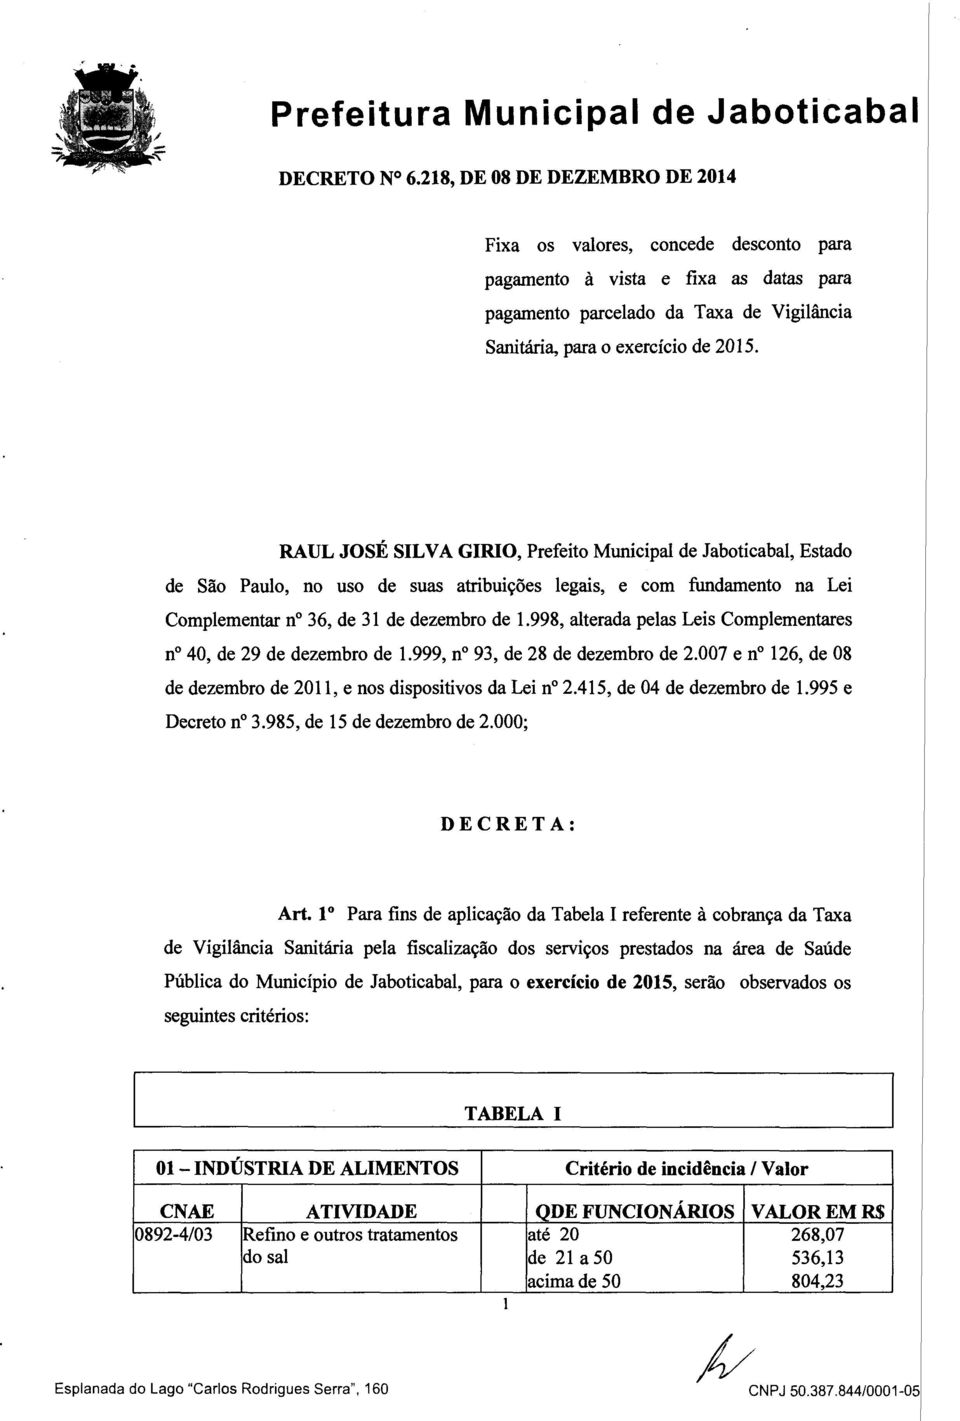 RAUL JOSÉ SILVA GIRIO, Prefeito Municipal de Jaboticabal, Estado de São Paulo, no uso de suas atribuições legais, e com fundamento na Lei Complementar nº 36, de 31 de dezembro de 1.